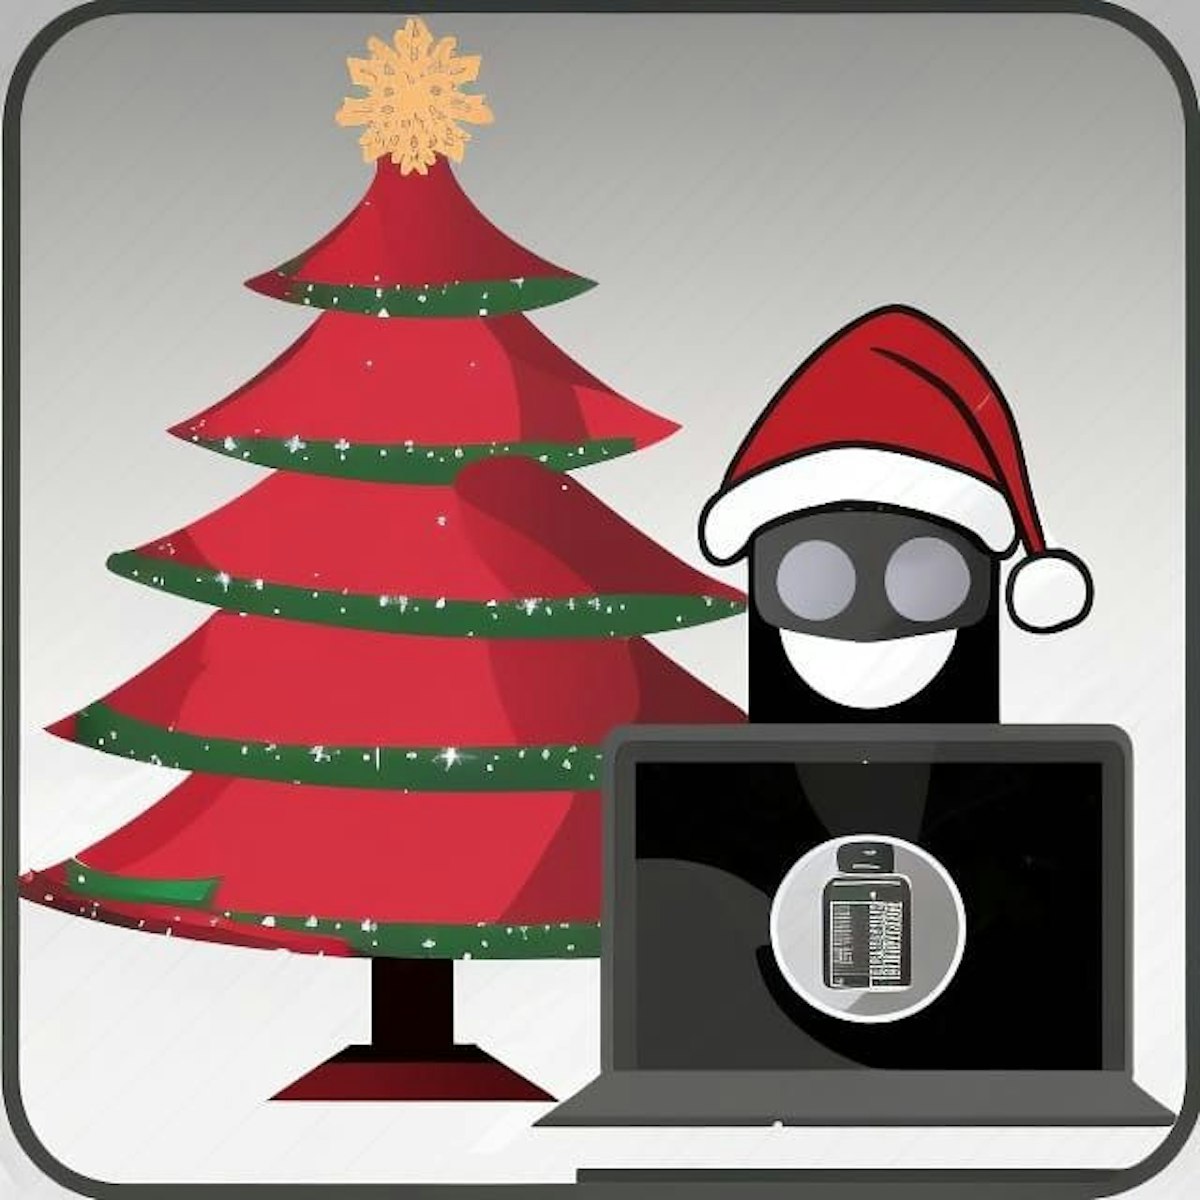 featured image - 5 món quà Giáng sinh giá rẻ dành cho Chuyên gia an ninh mạng mà bạn biết (Và 5 món đồ 'xa xỉ' dành cho hacker)